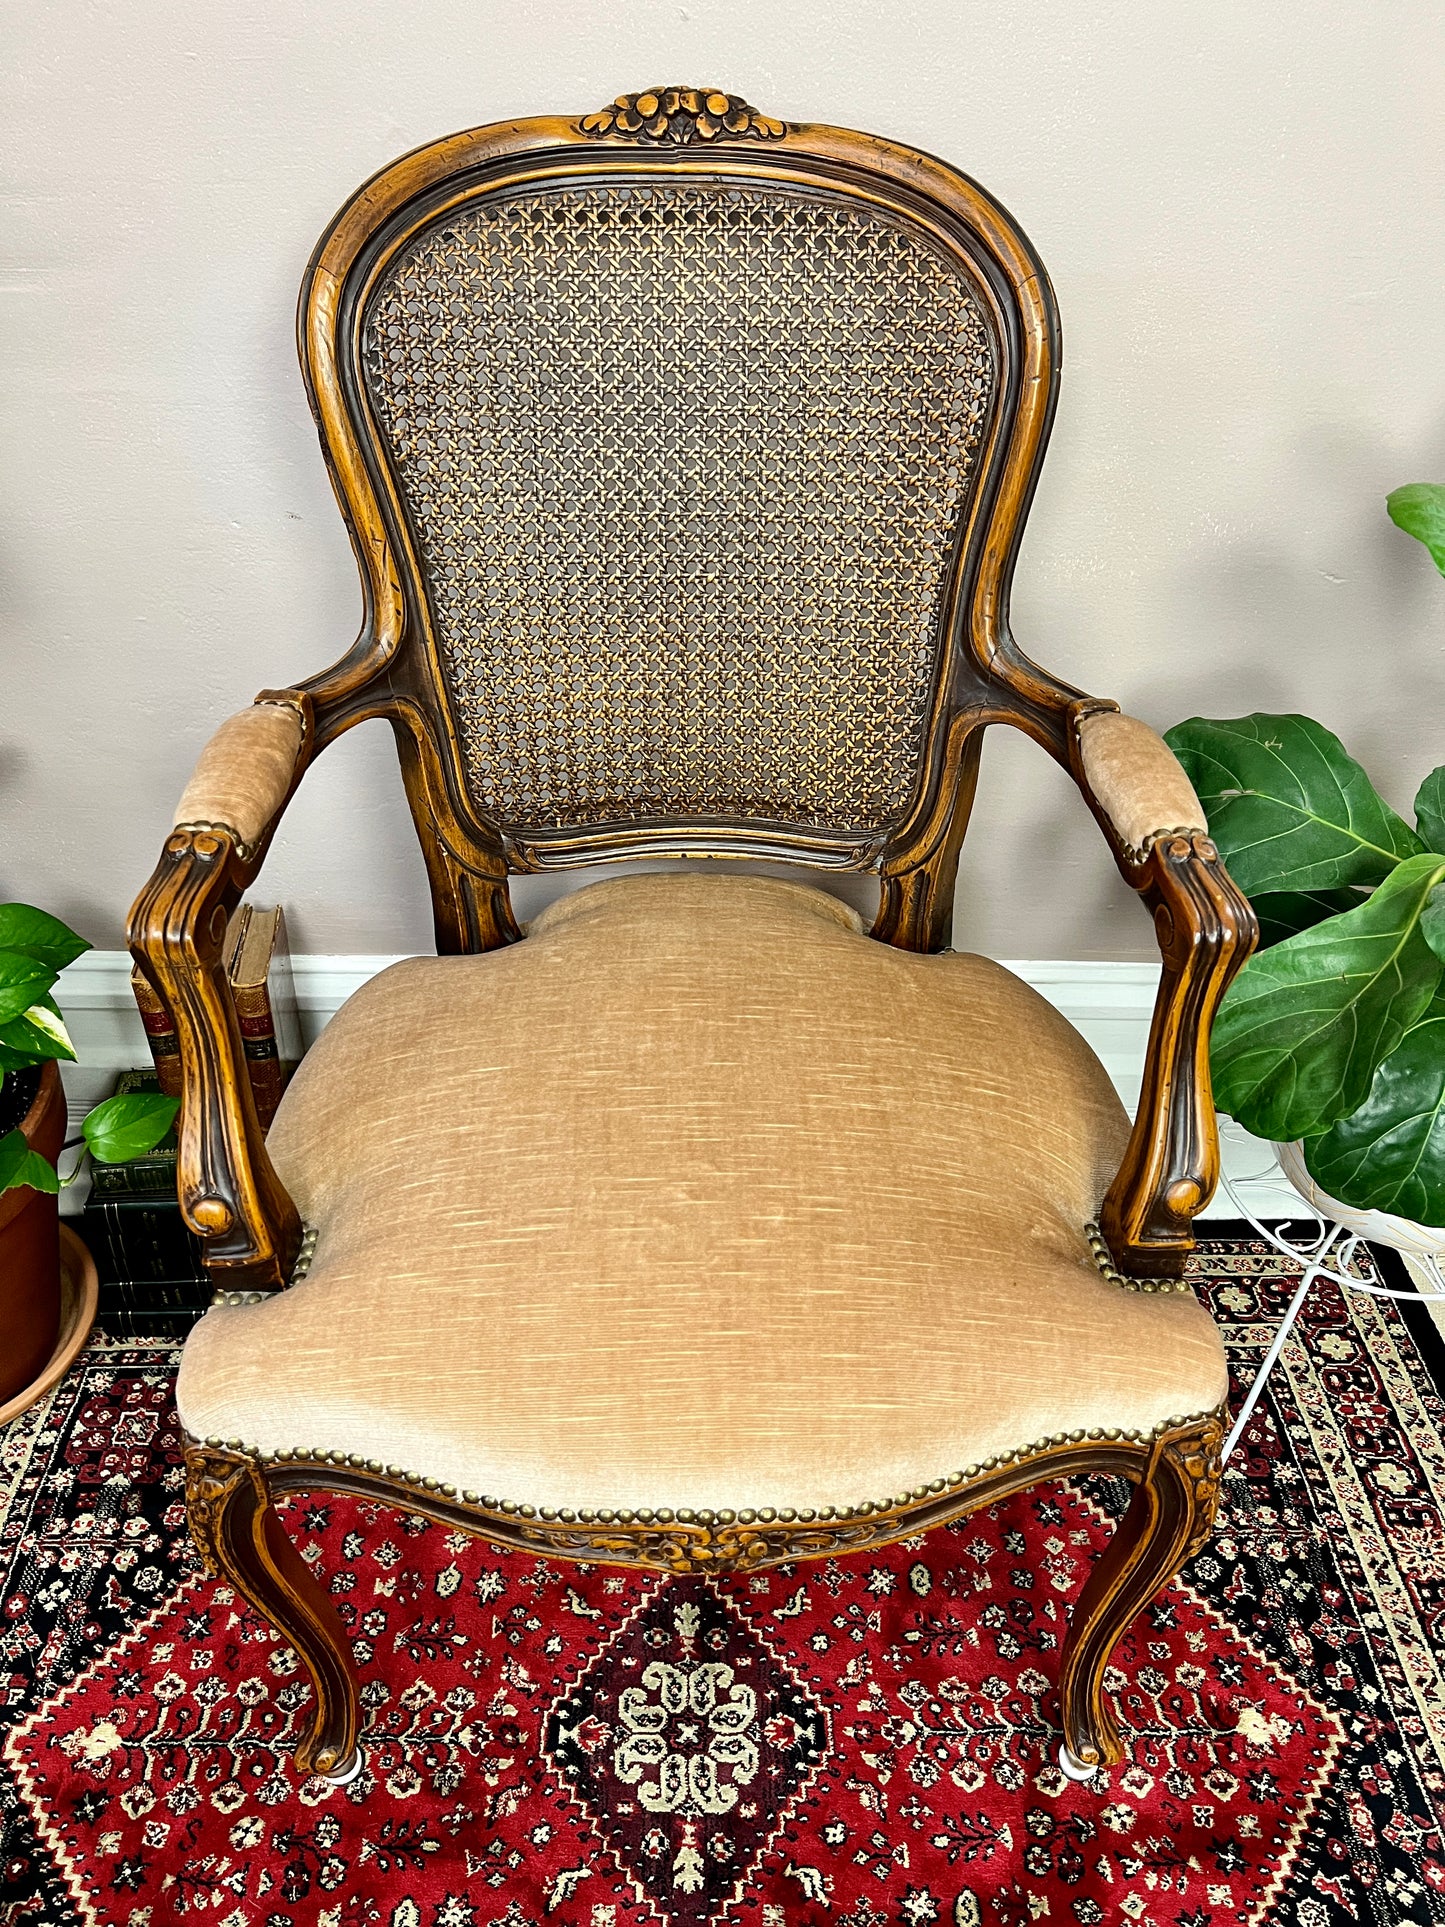 The Agatha Chair